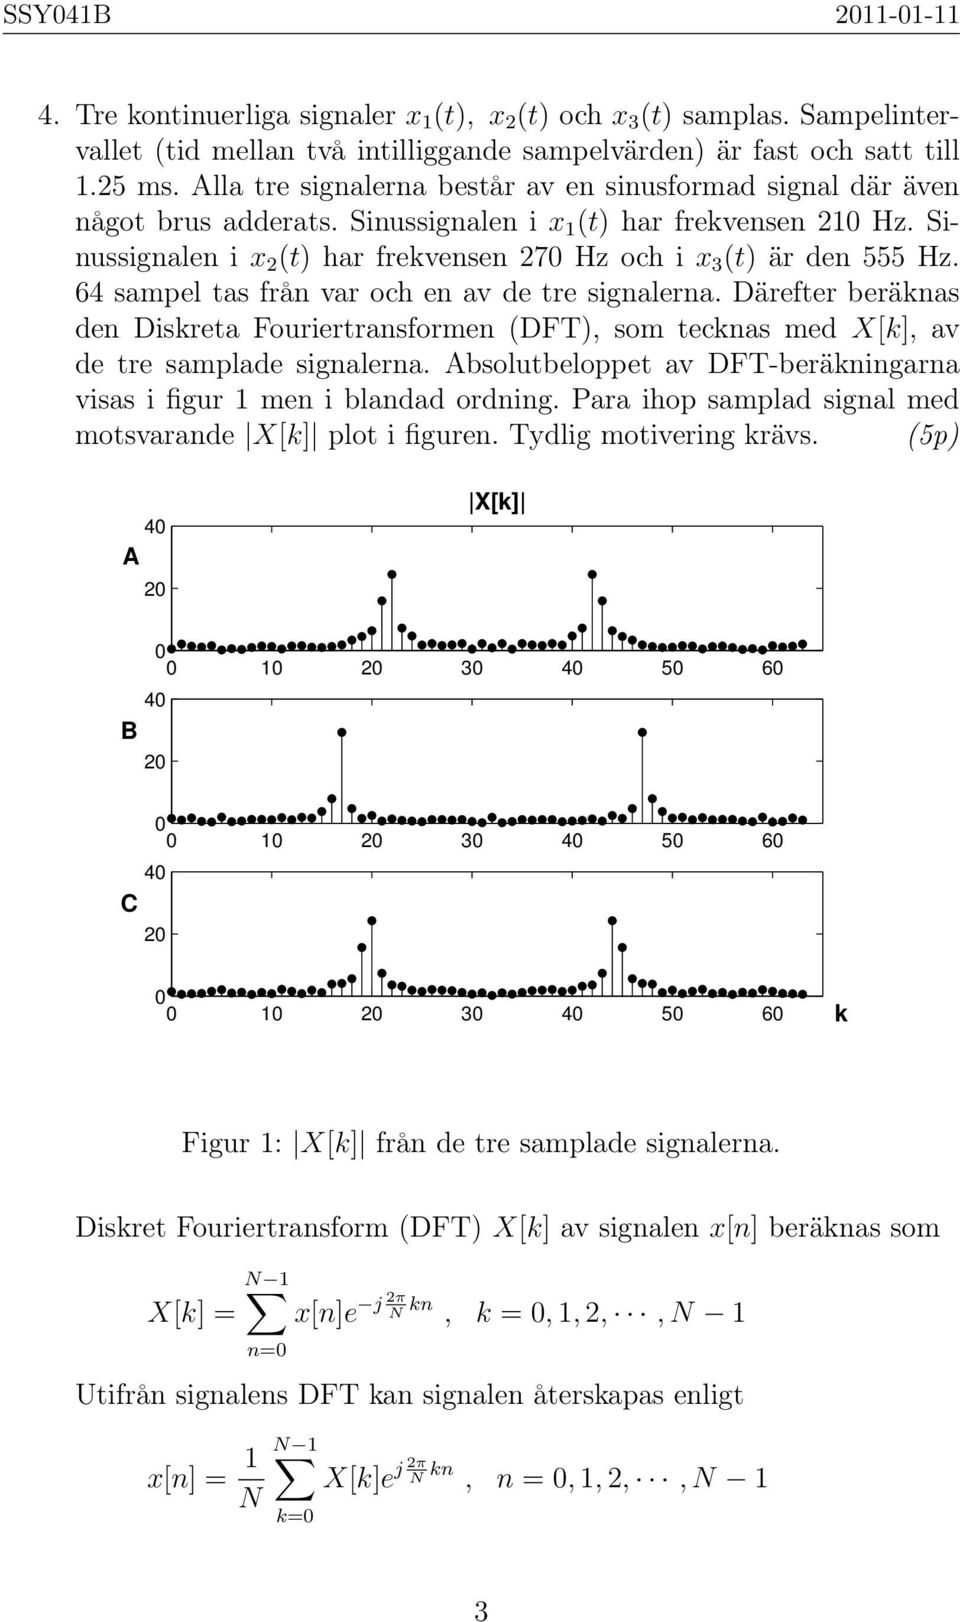 Sinussignalen i x 2 (t) har frekvensen 27 Hz och i x 3 (t) är den 555 Hz. 64 sampel tas från var och en av de tre signalerna.